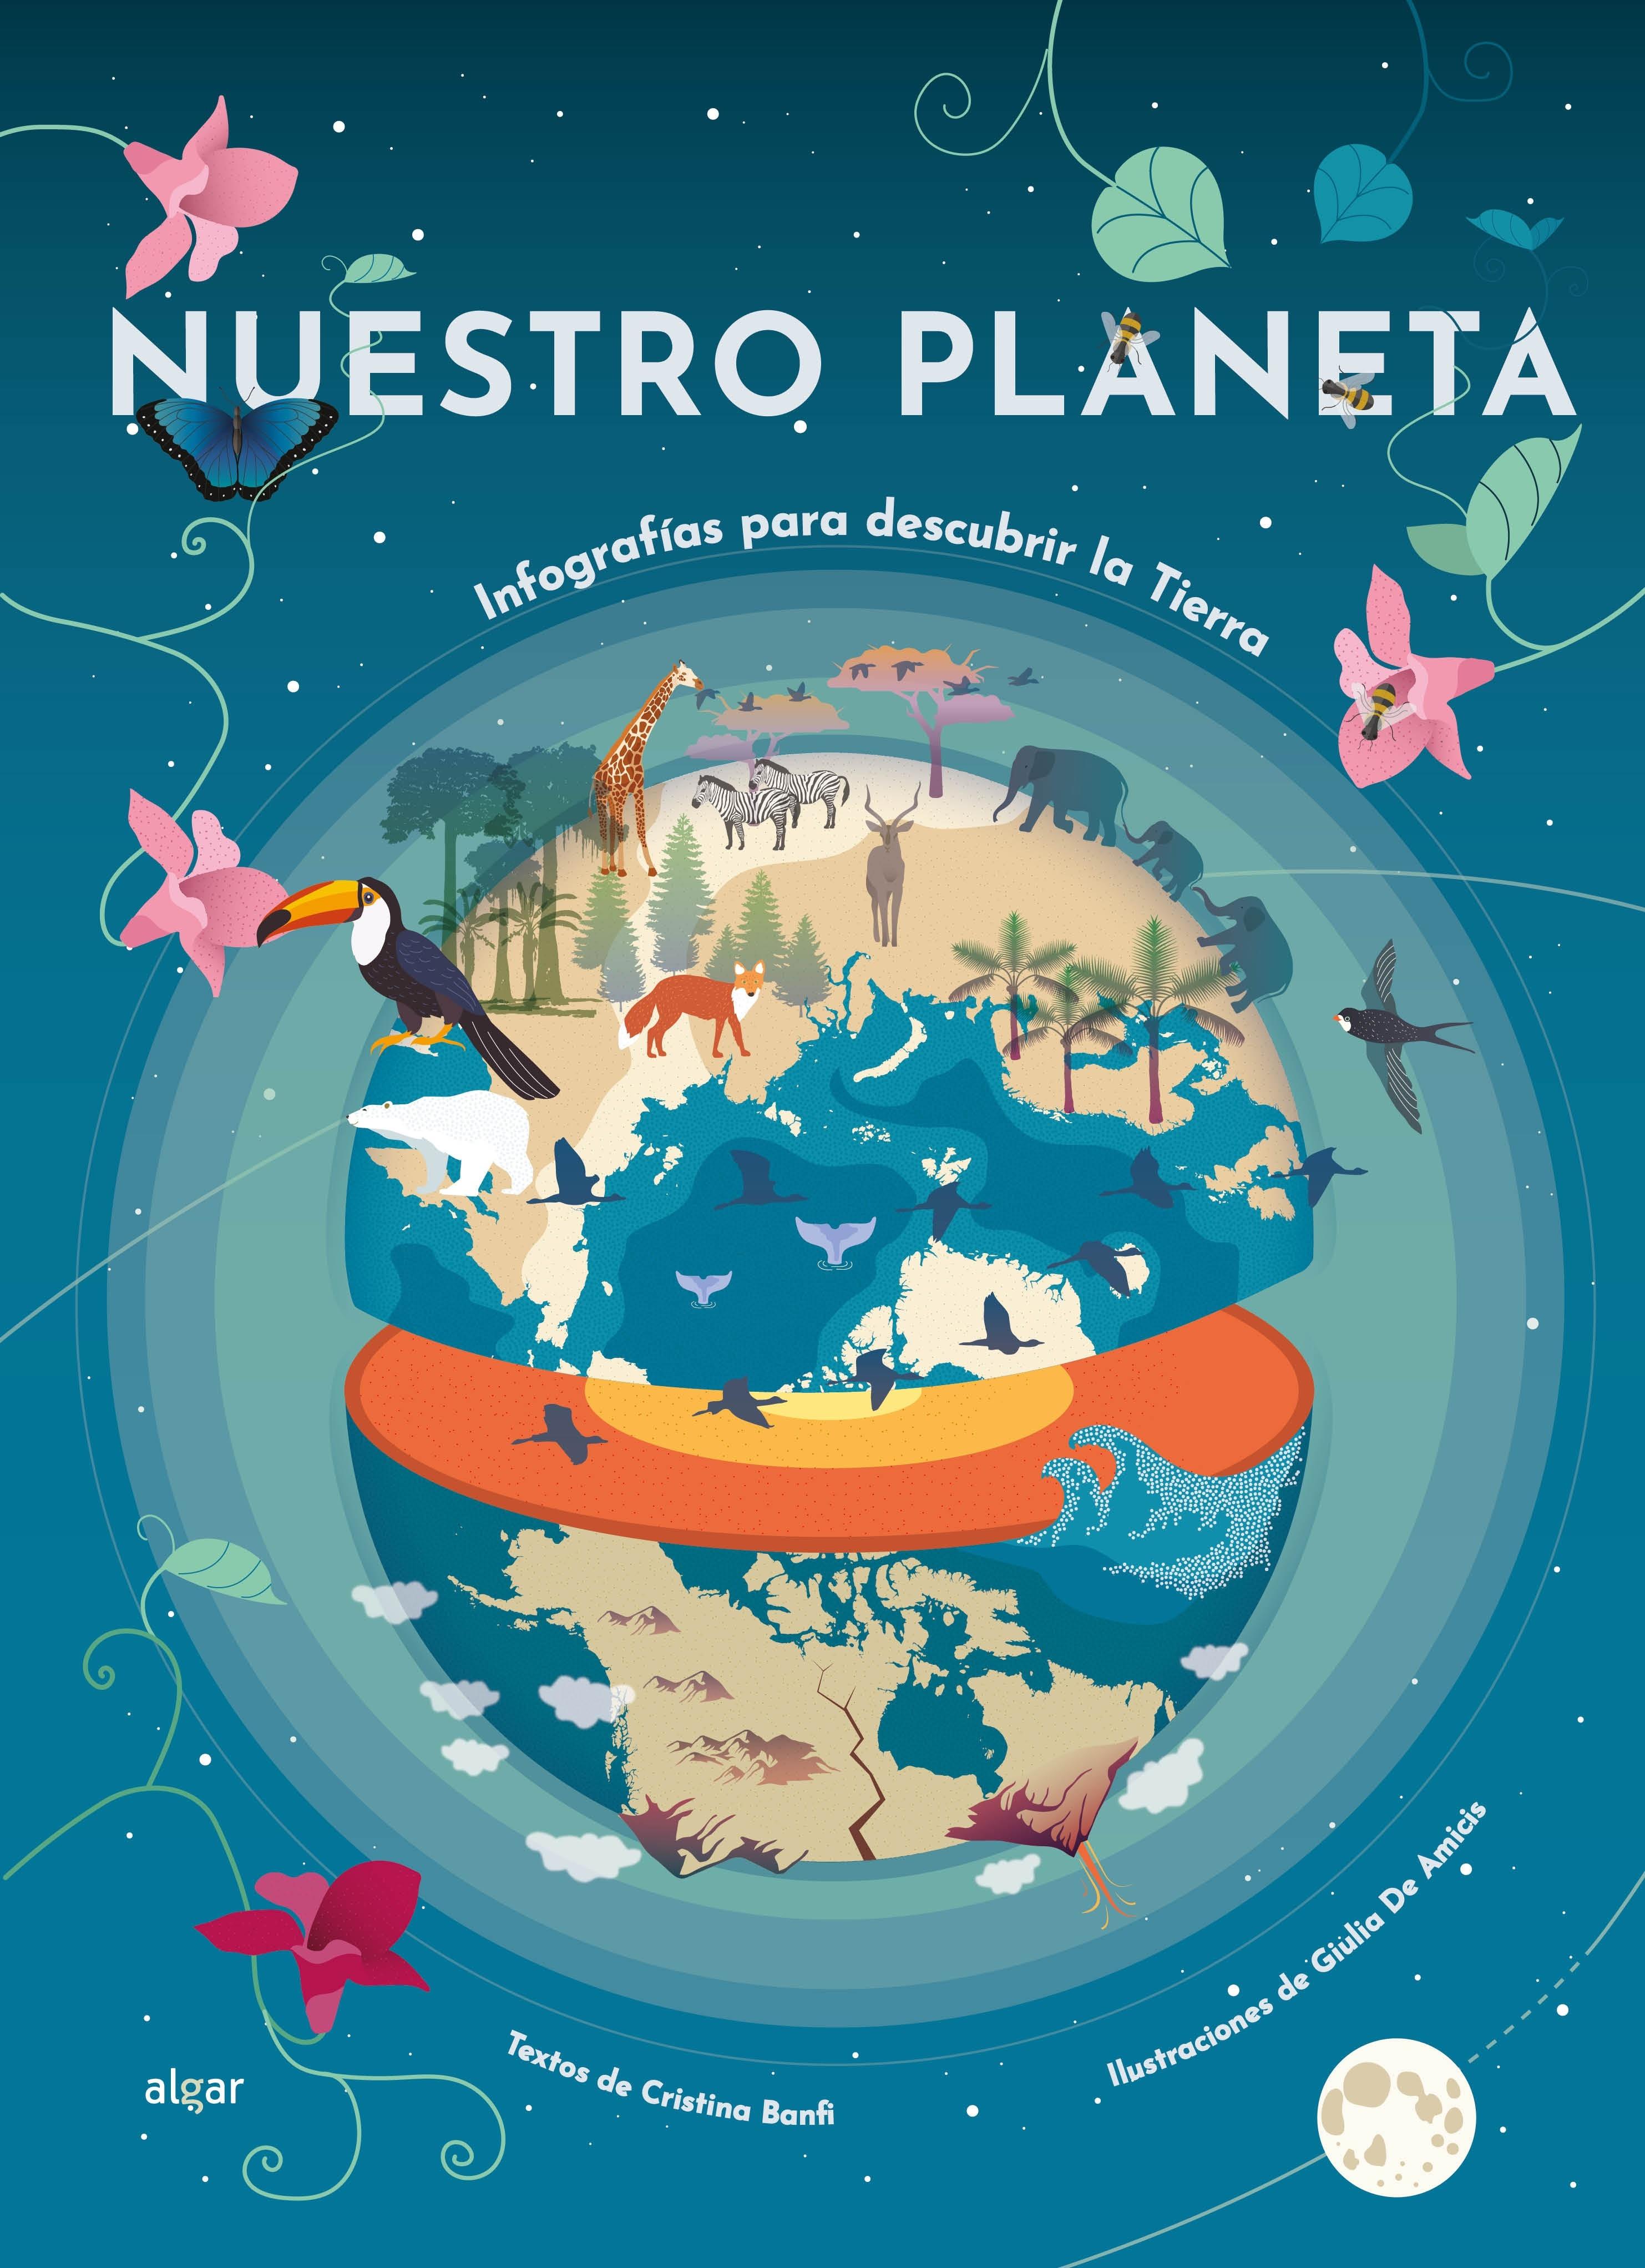 Nuestro planeta "Infografías para descubrir la Tierra"